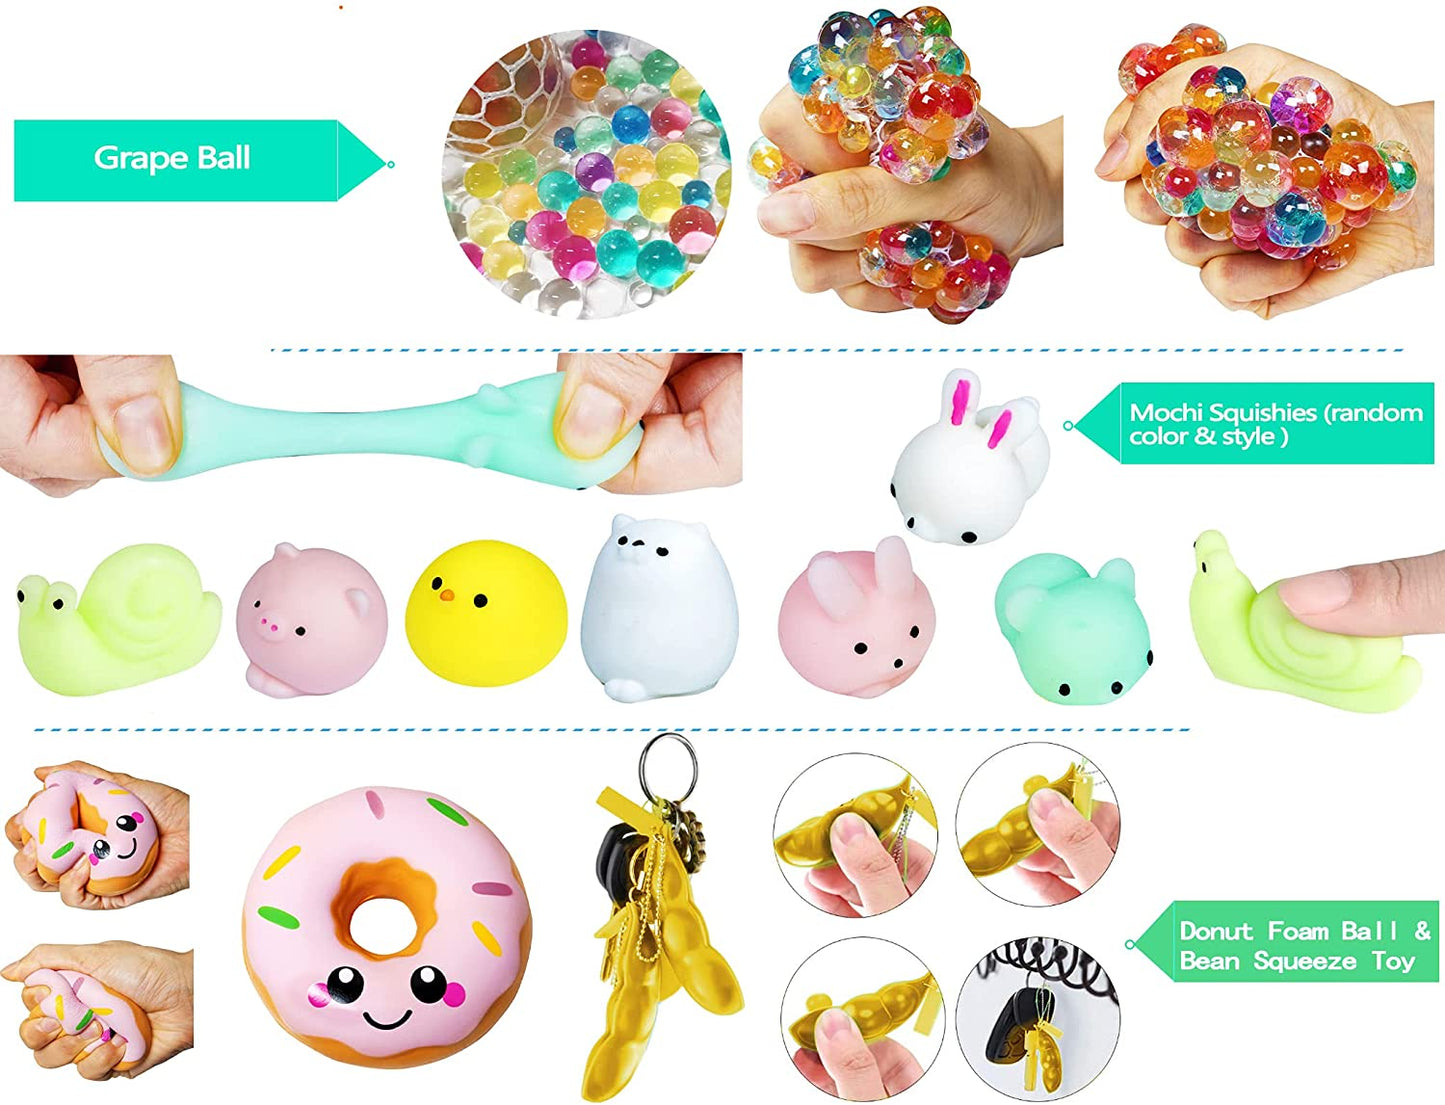 Gmajtars Fidget - Brinquedos sensoriais para adultos e crianças